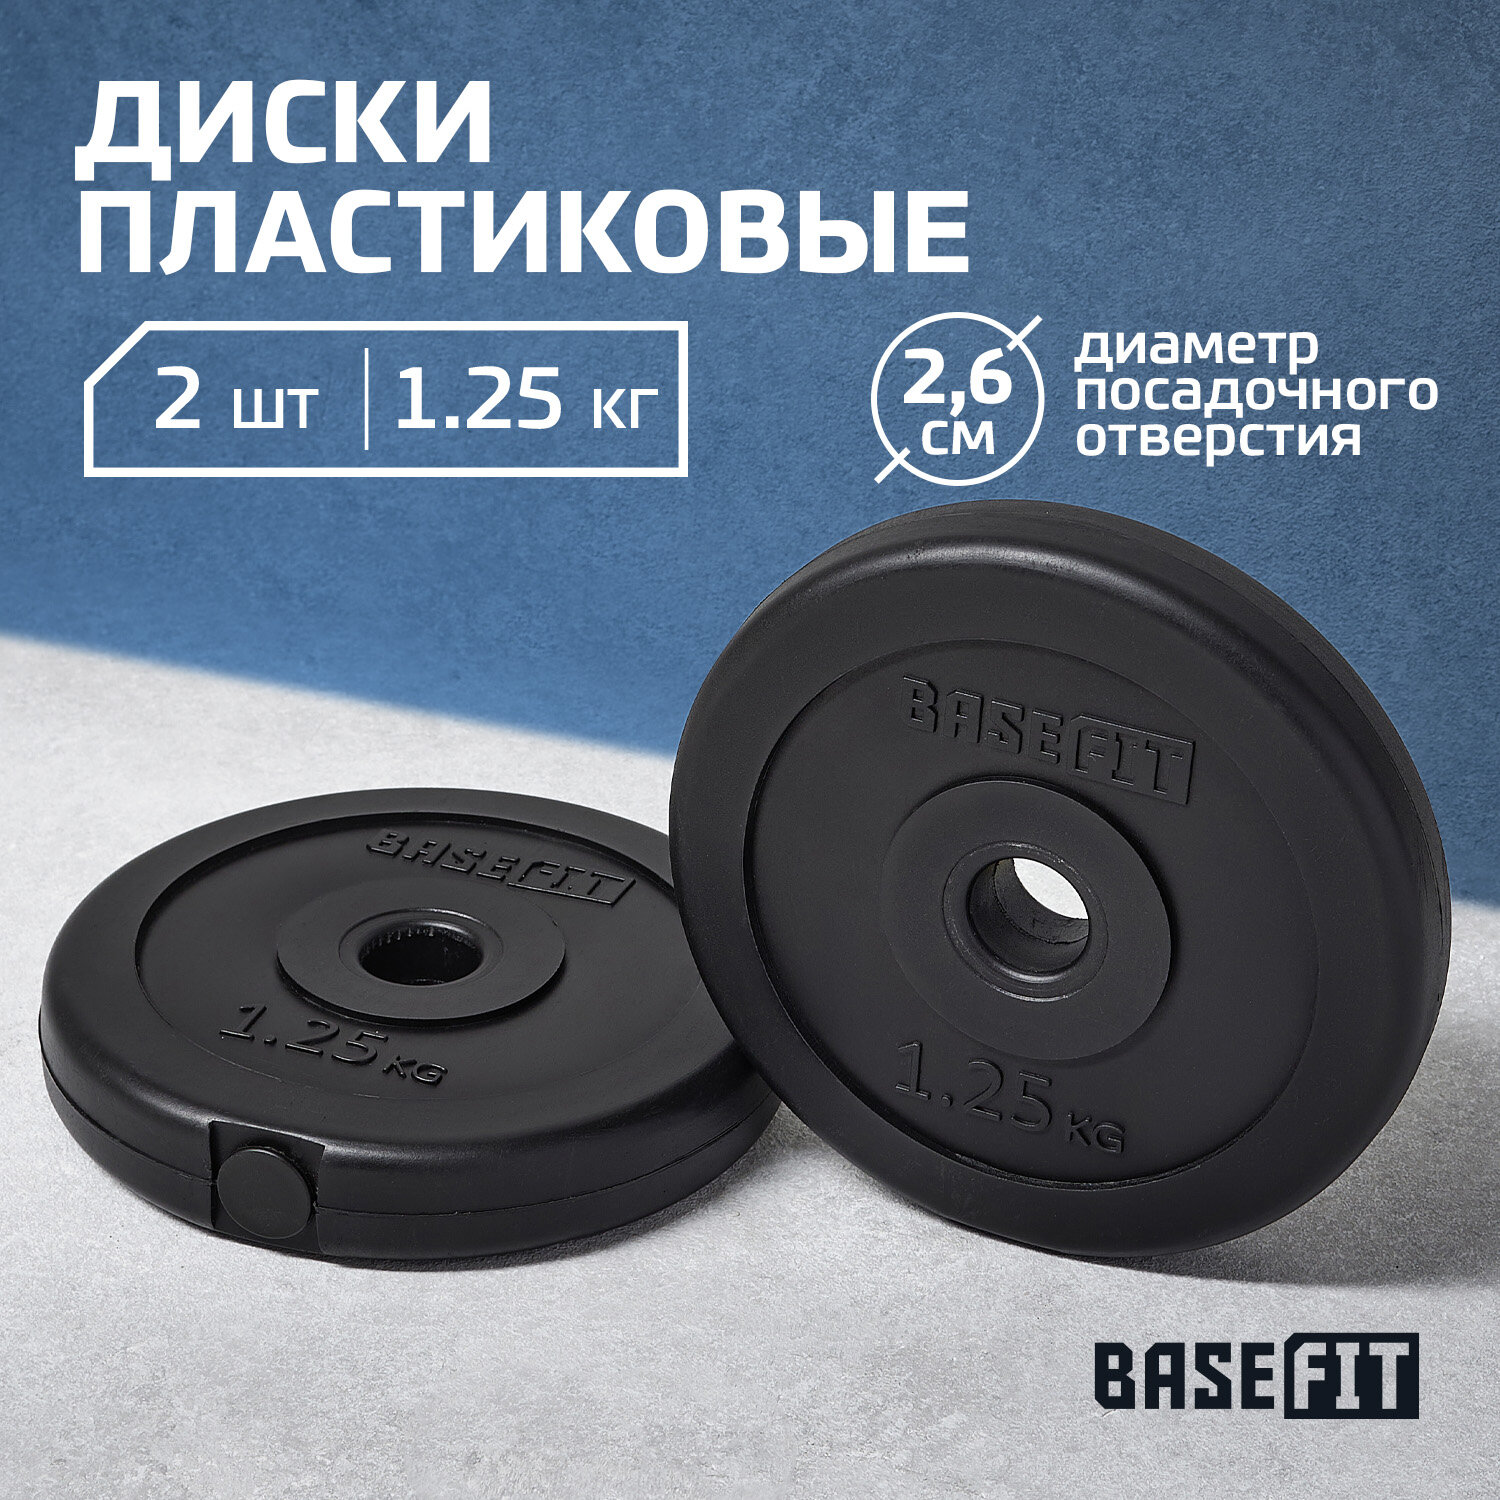 Диск пластиковый BASEFIT BB-203 1,25 кг, d=26 мм, черный, 2 шт